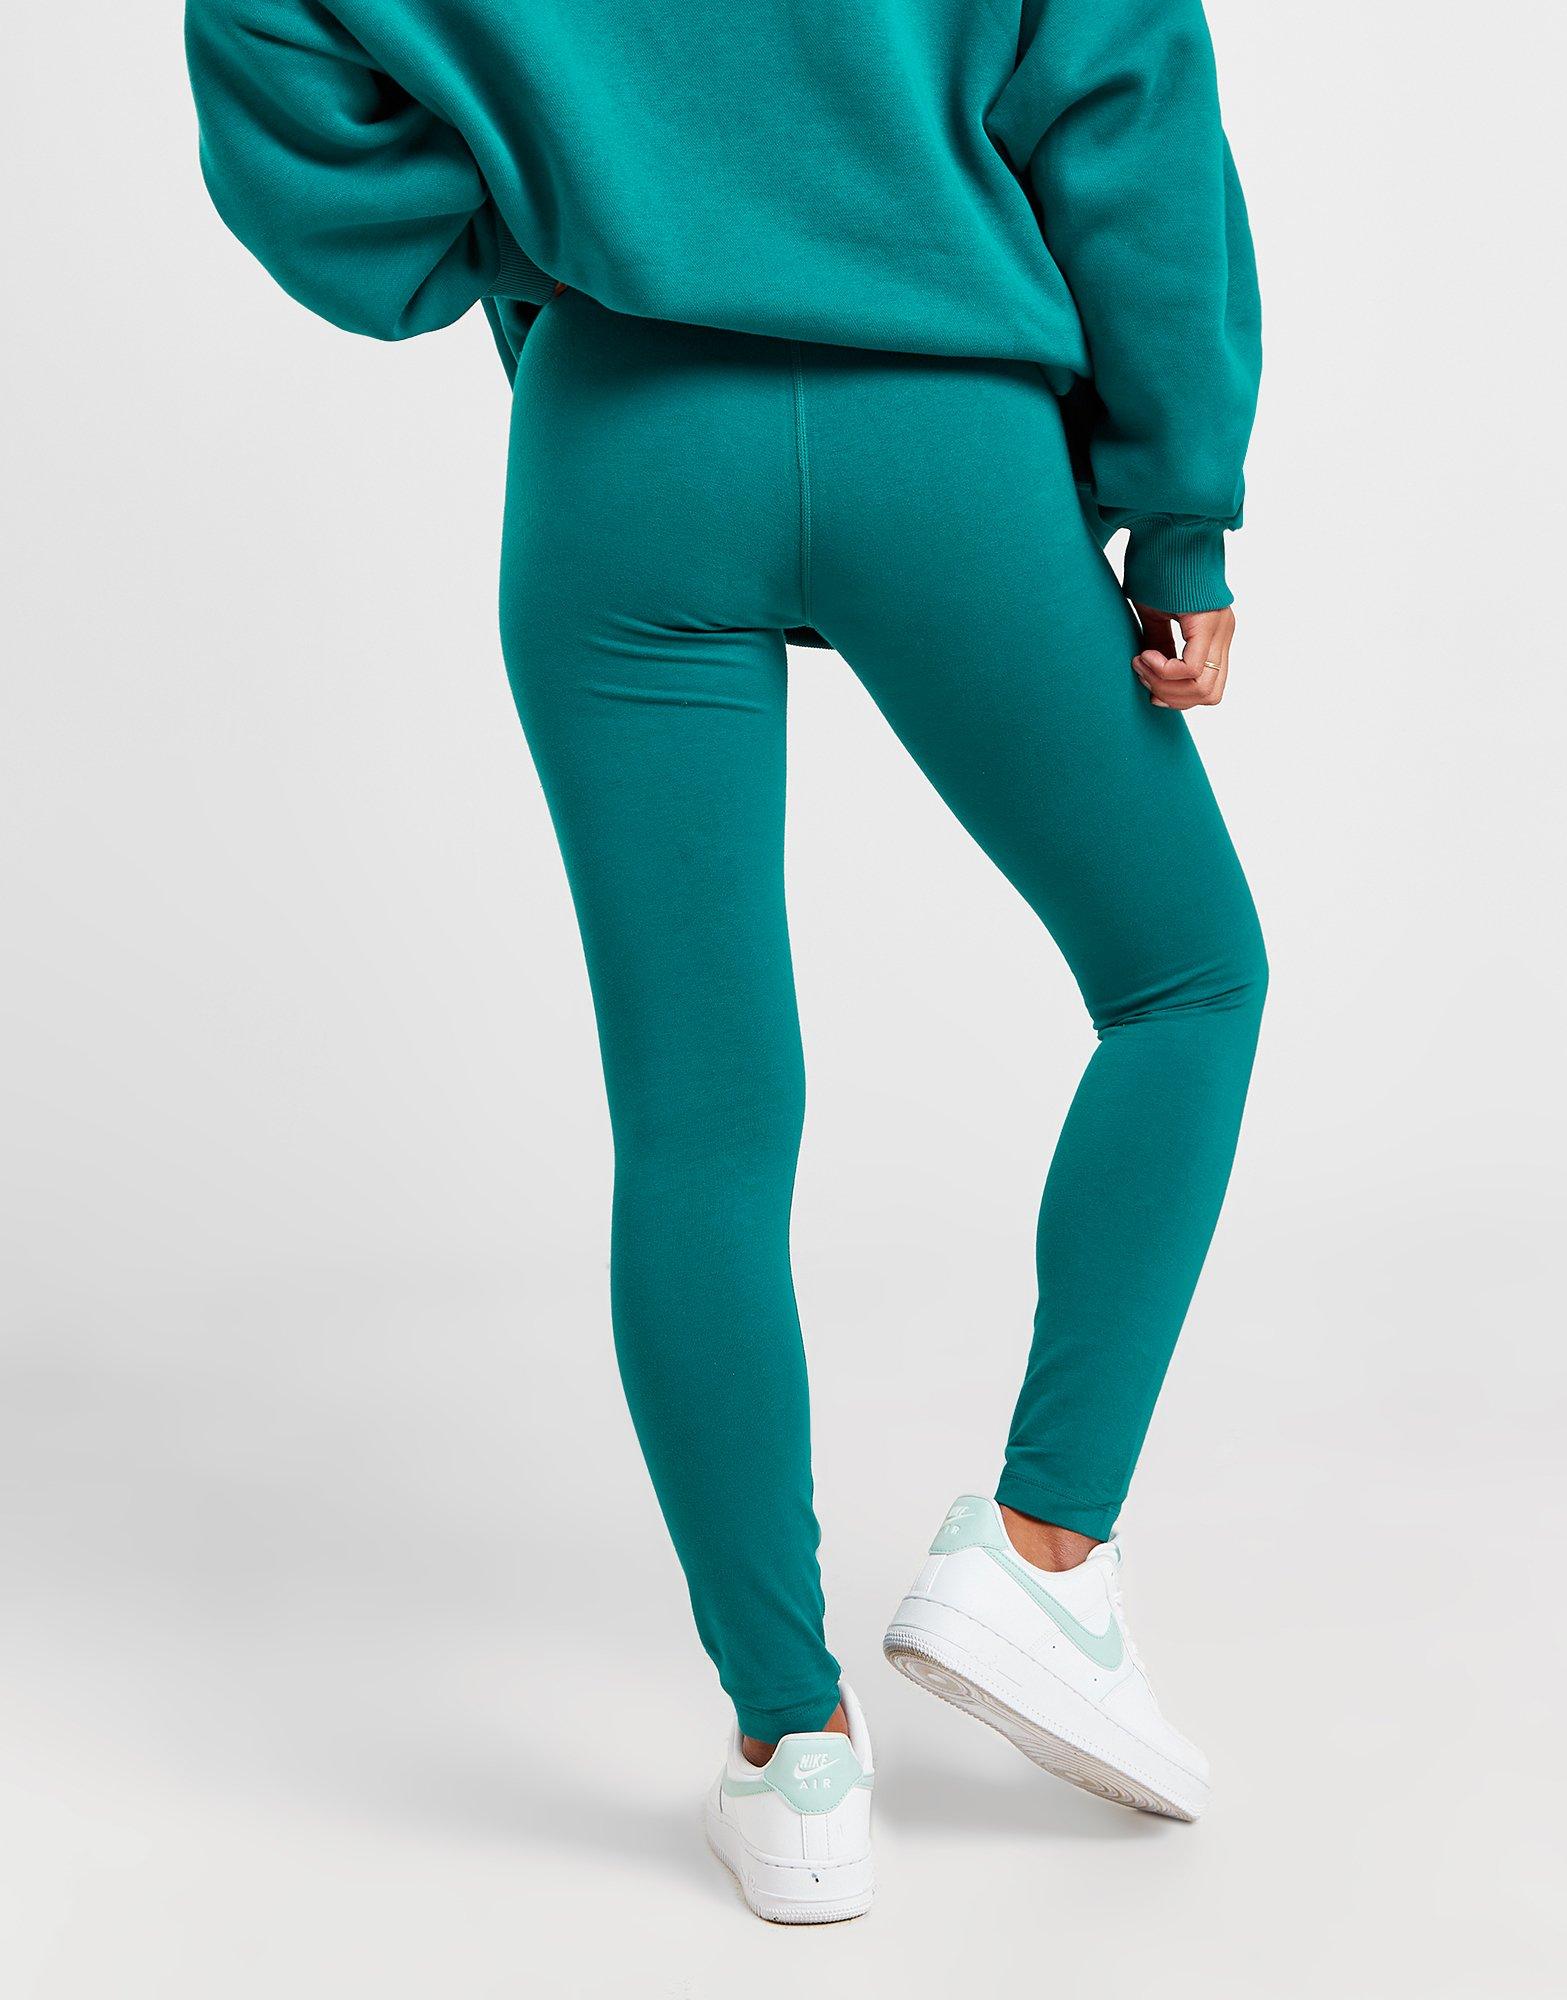 Nike Varsity Leggings Women's Green Size M